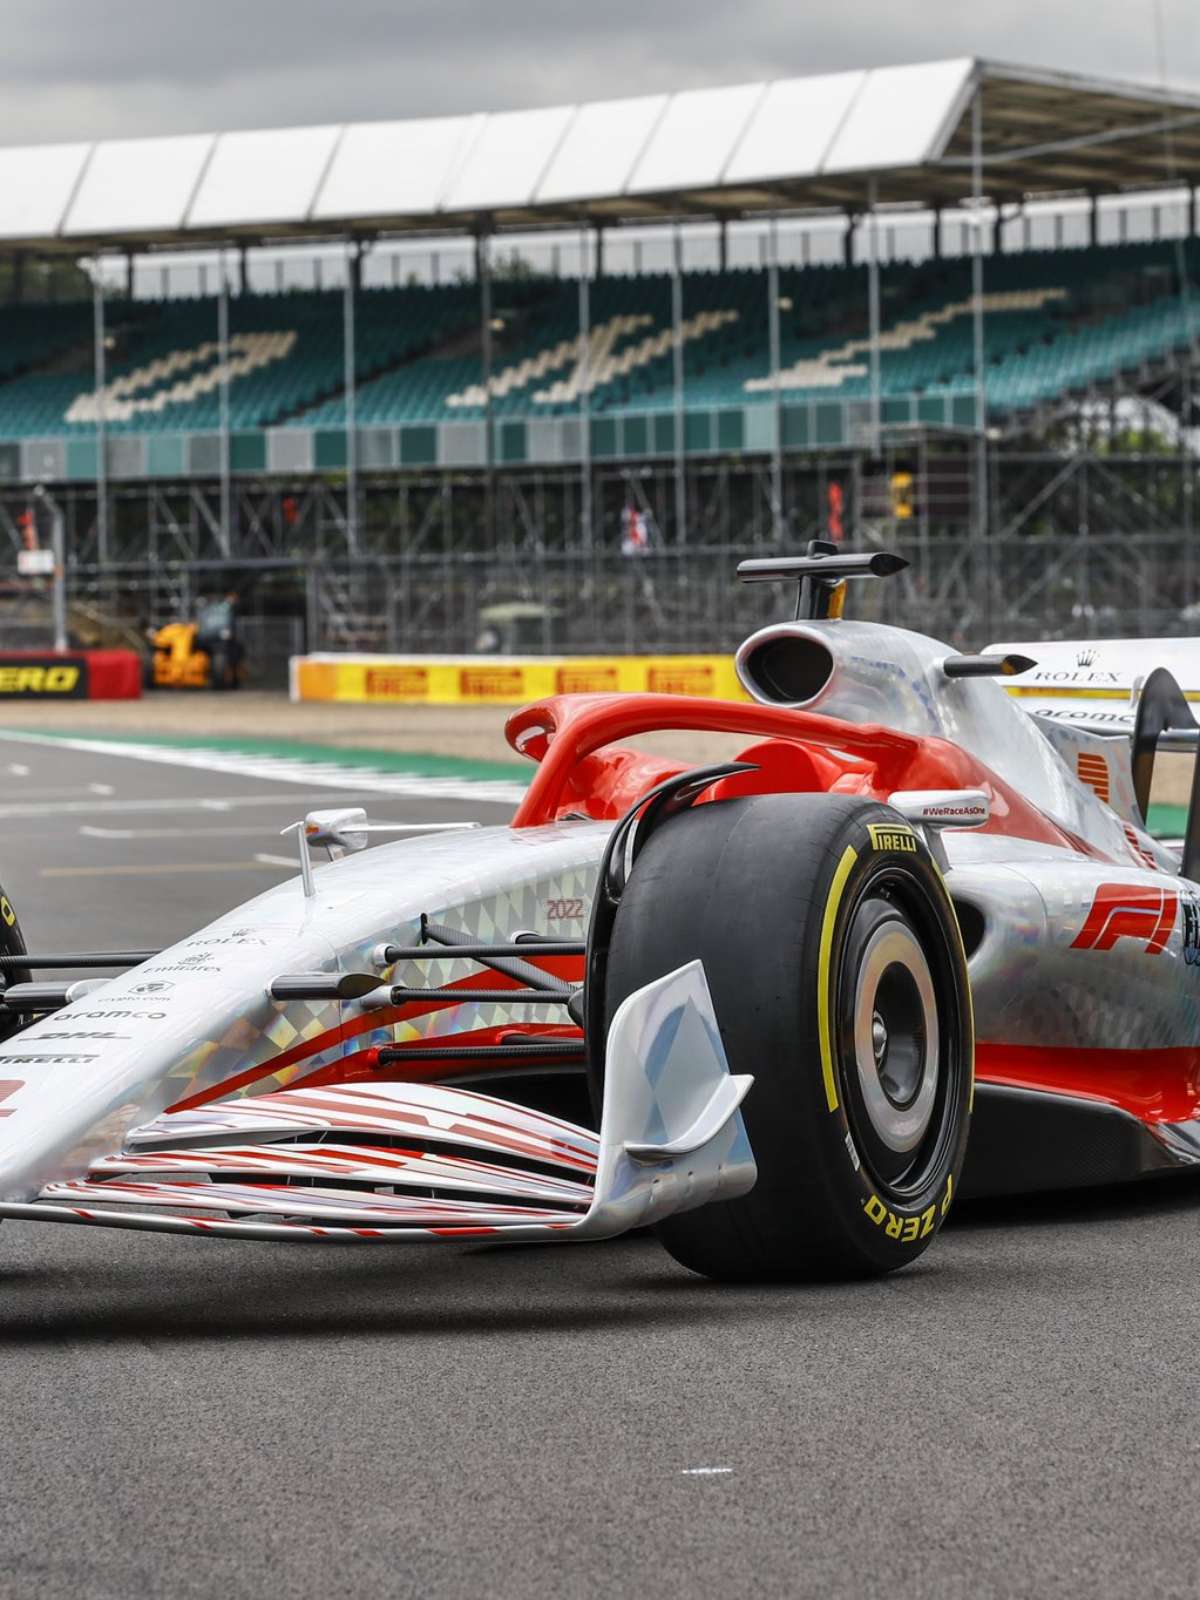 Peso do carro de F1 é um fator importante em 2022, diz diretor da Haas -  Notícia de F1